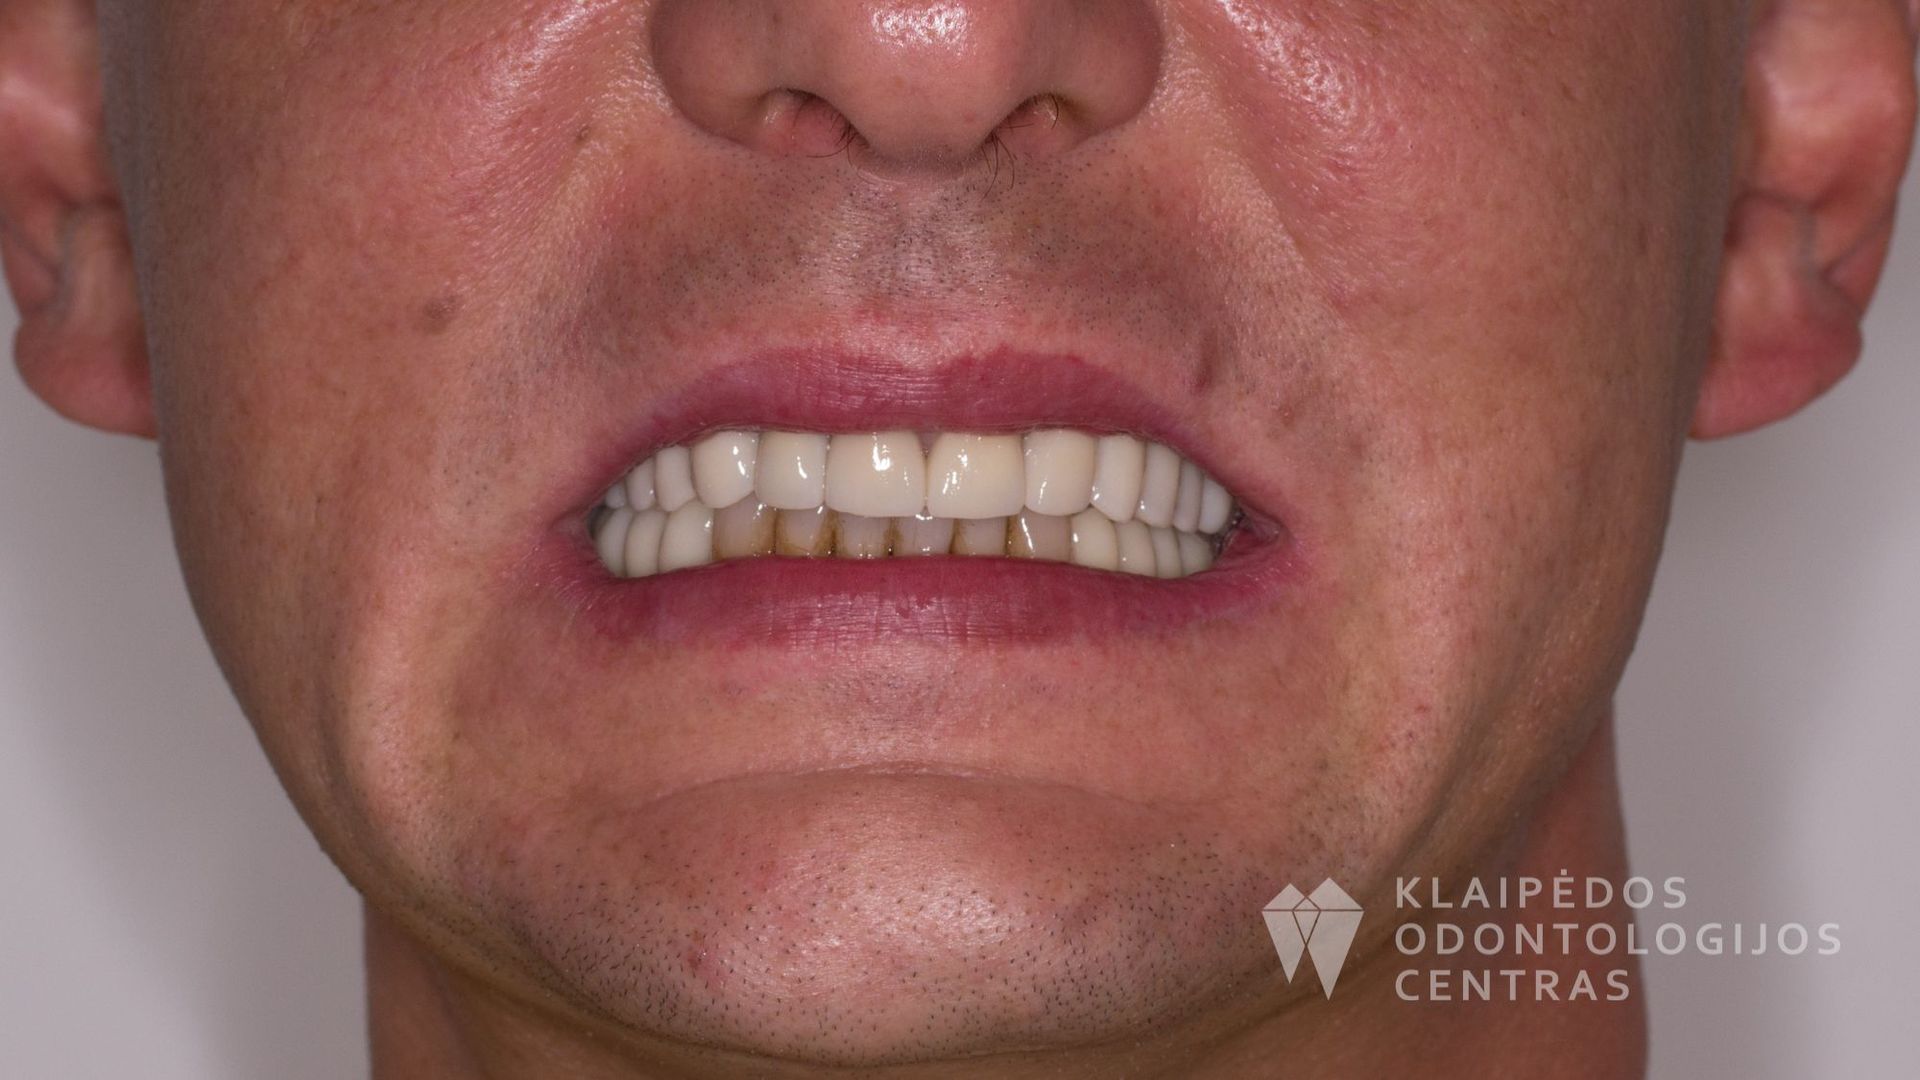 Visų dantų protezavimas cirkonio keramikos vainikėliais ant dantų ir implantų - po